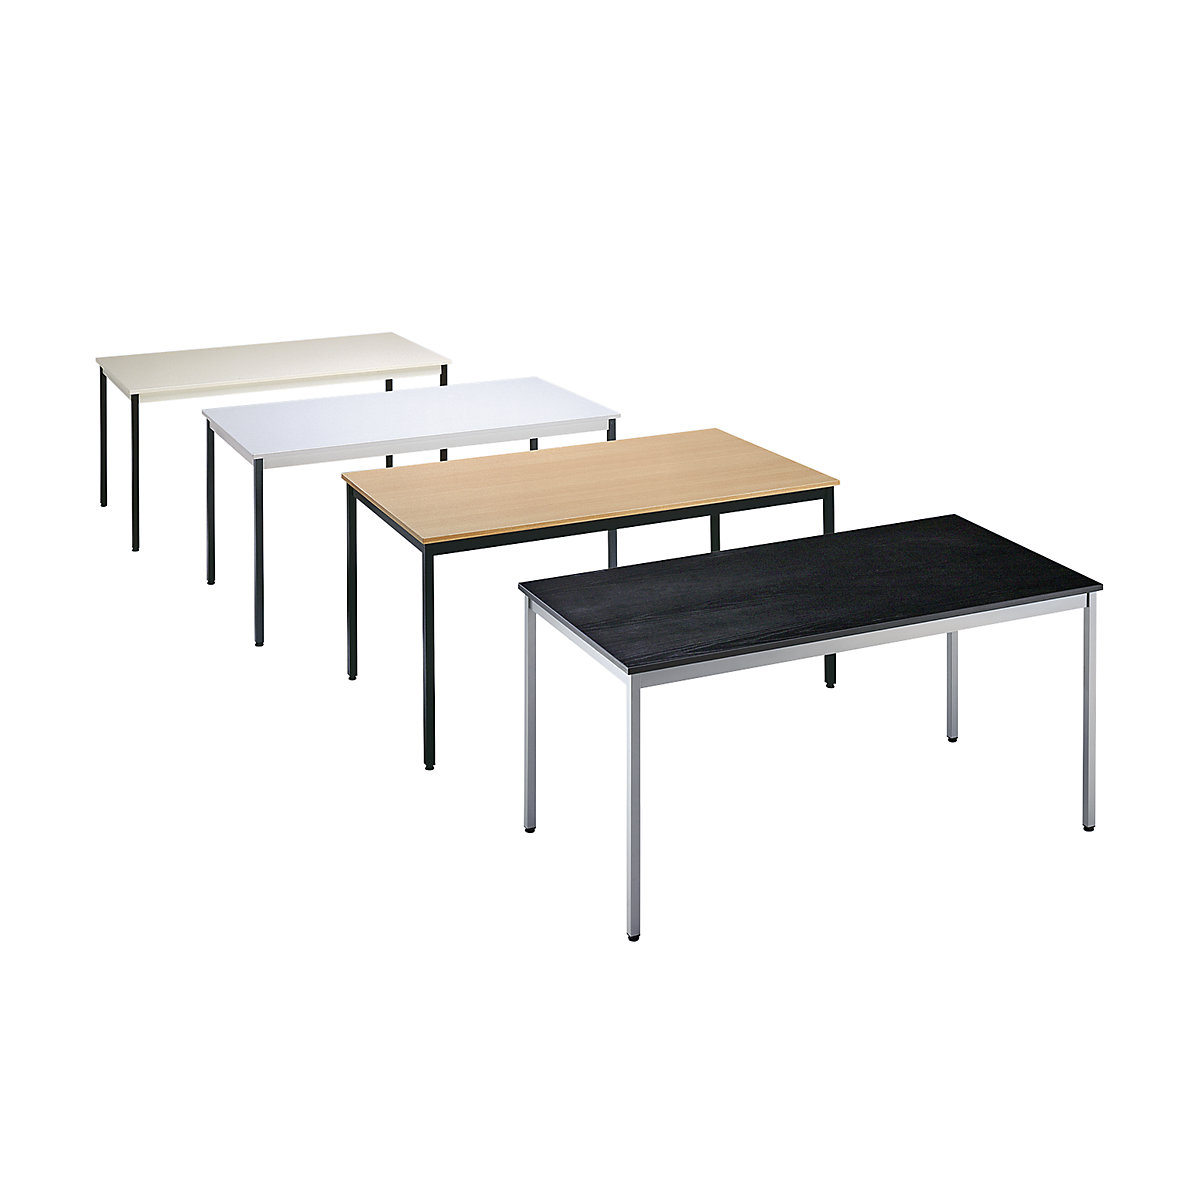 Table polyvalente – eurokraft basic, rectangulaire, h x l x p 740 x 1600 x 800 mm, plateau façon érable, piétement aluminium-1